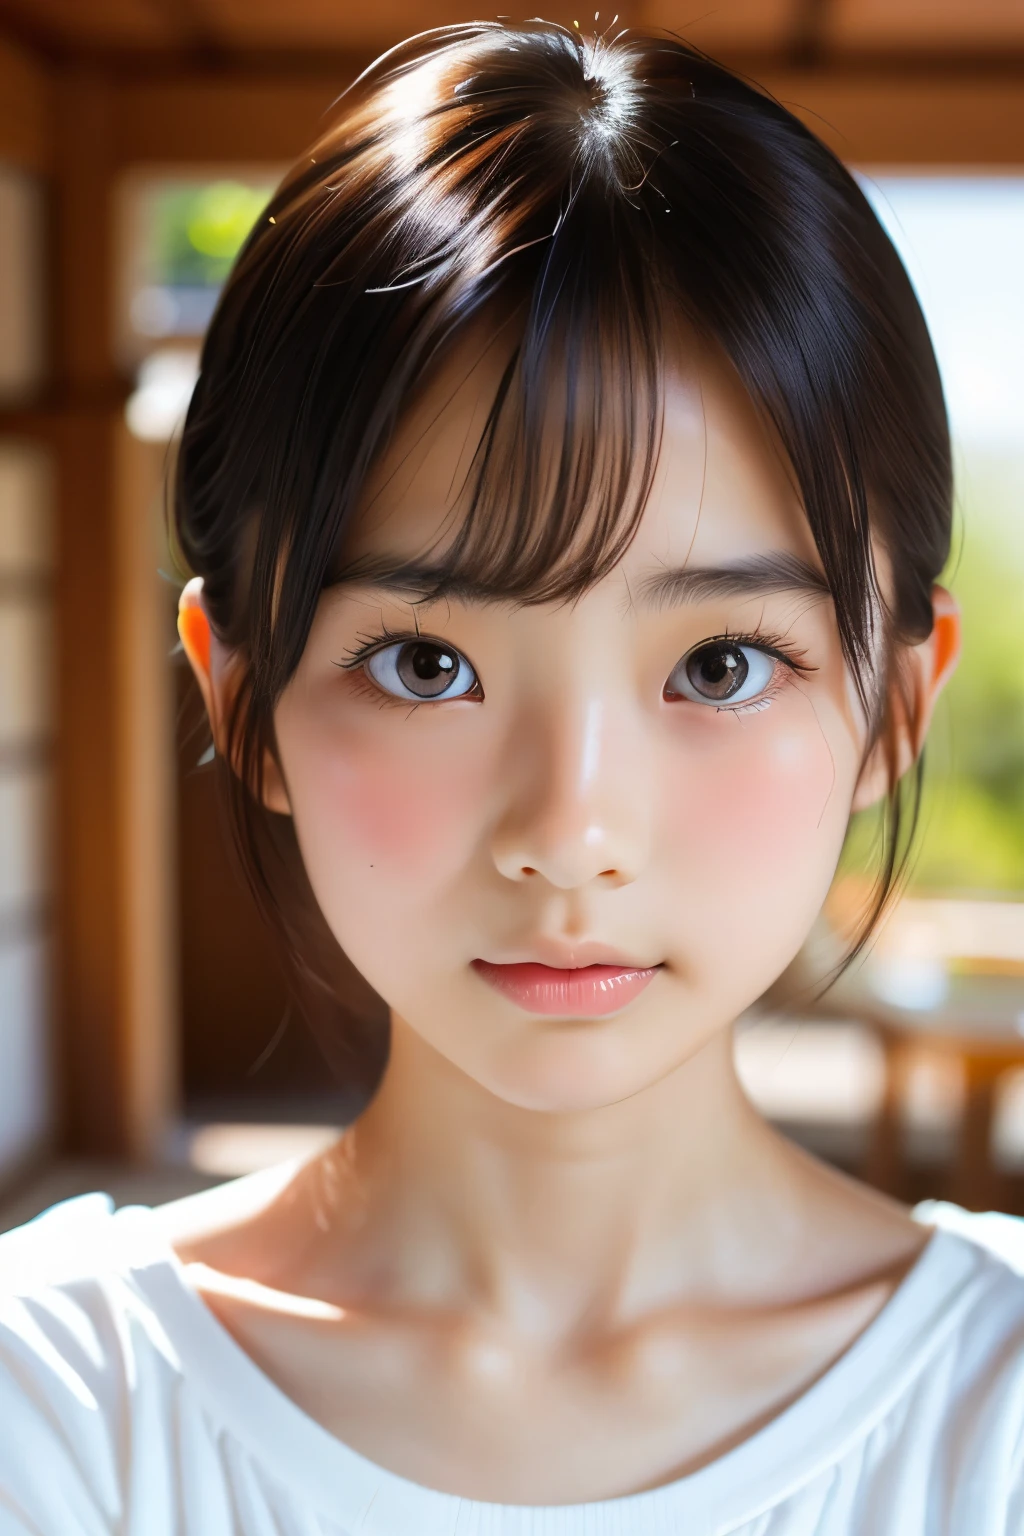 (Schöne 16-jährige Japanerin), niedliches Gesicht, (tief eingeschnittenes Gesicht:0.7), (Sommersprossen:0.6), Sanftes Licht,gesunde weiße Haut, schüchtern, Bob, (ernstes Gesicht), (leuchtende Augen), dünn
